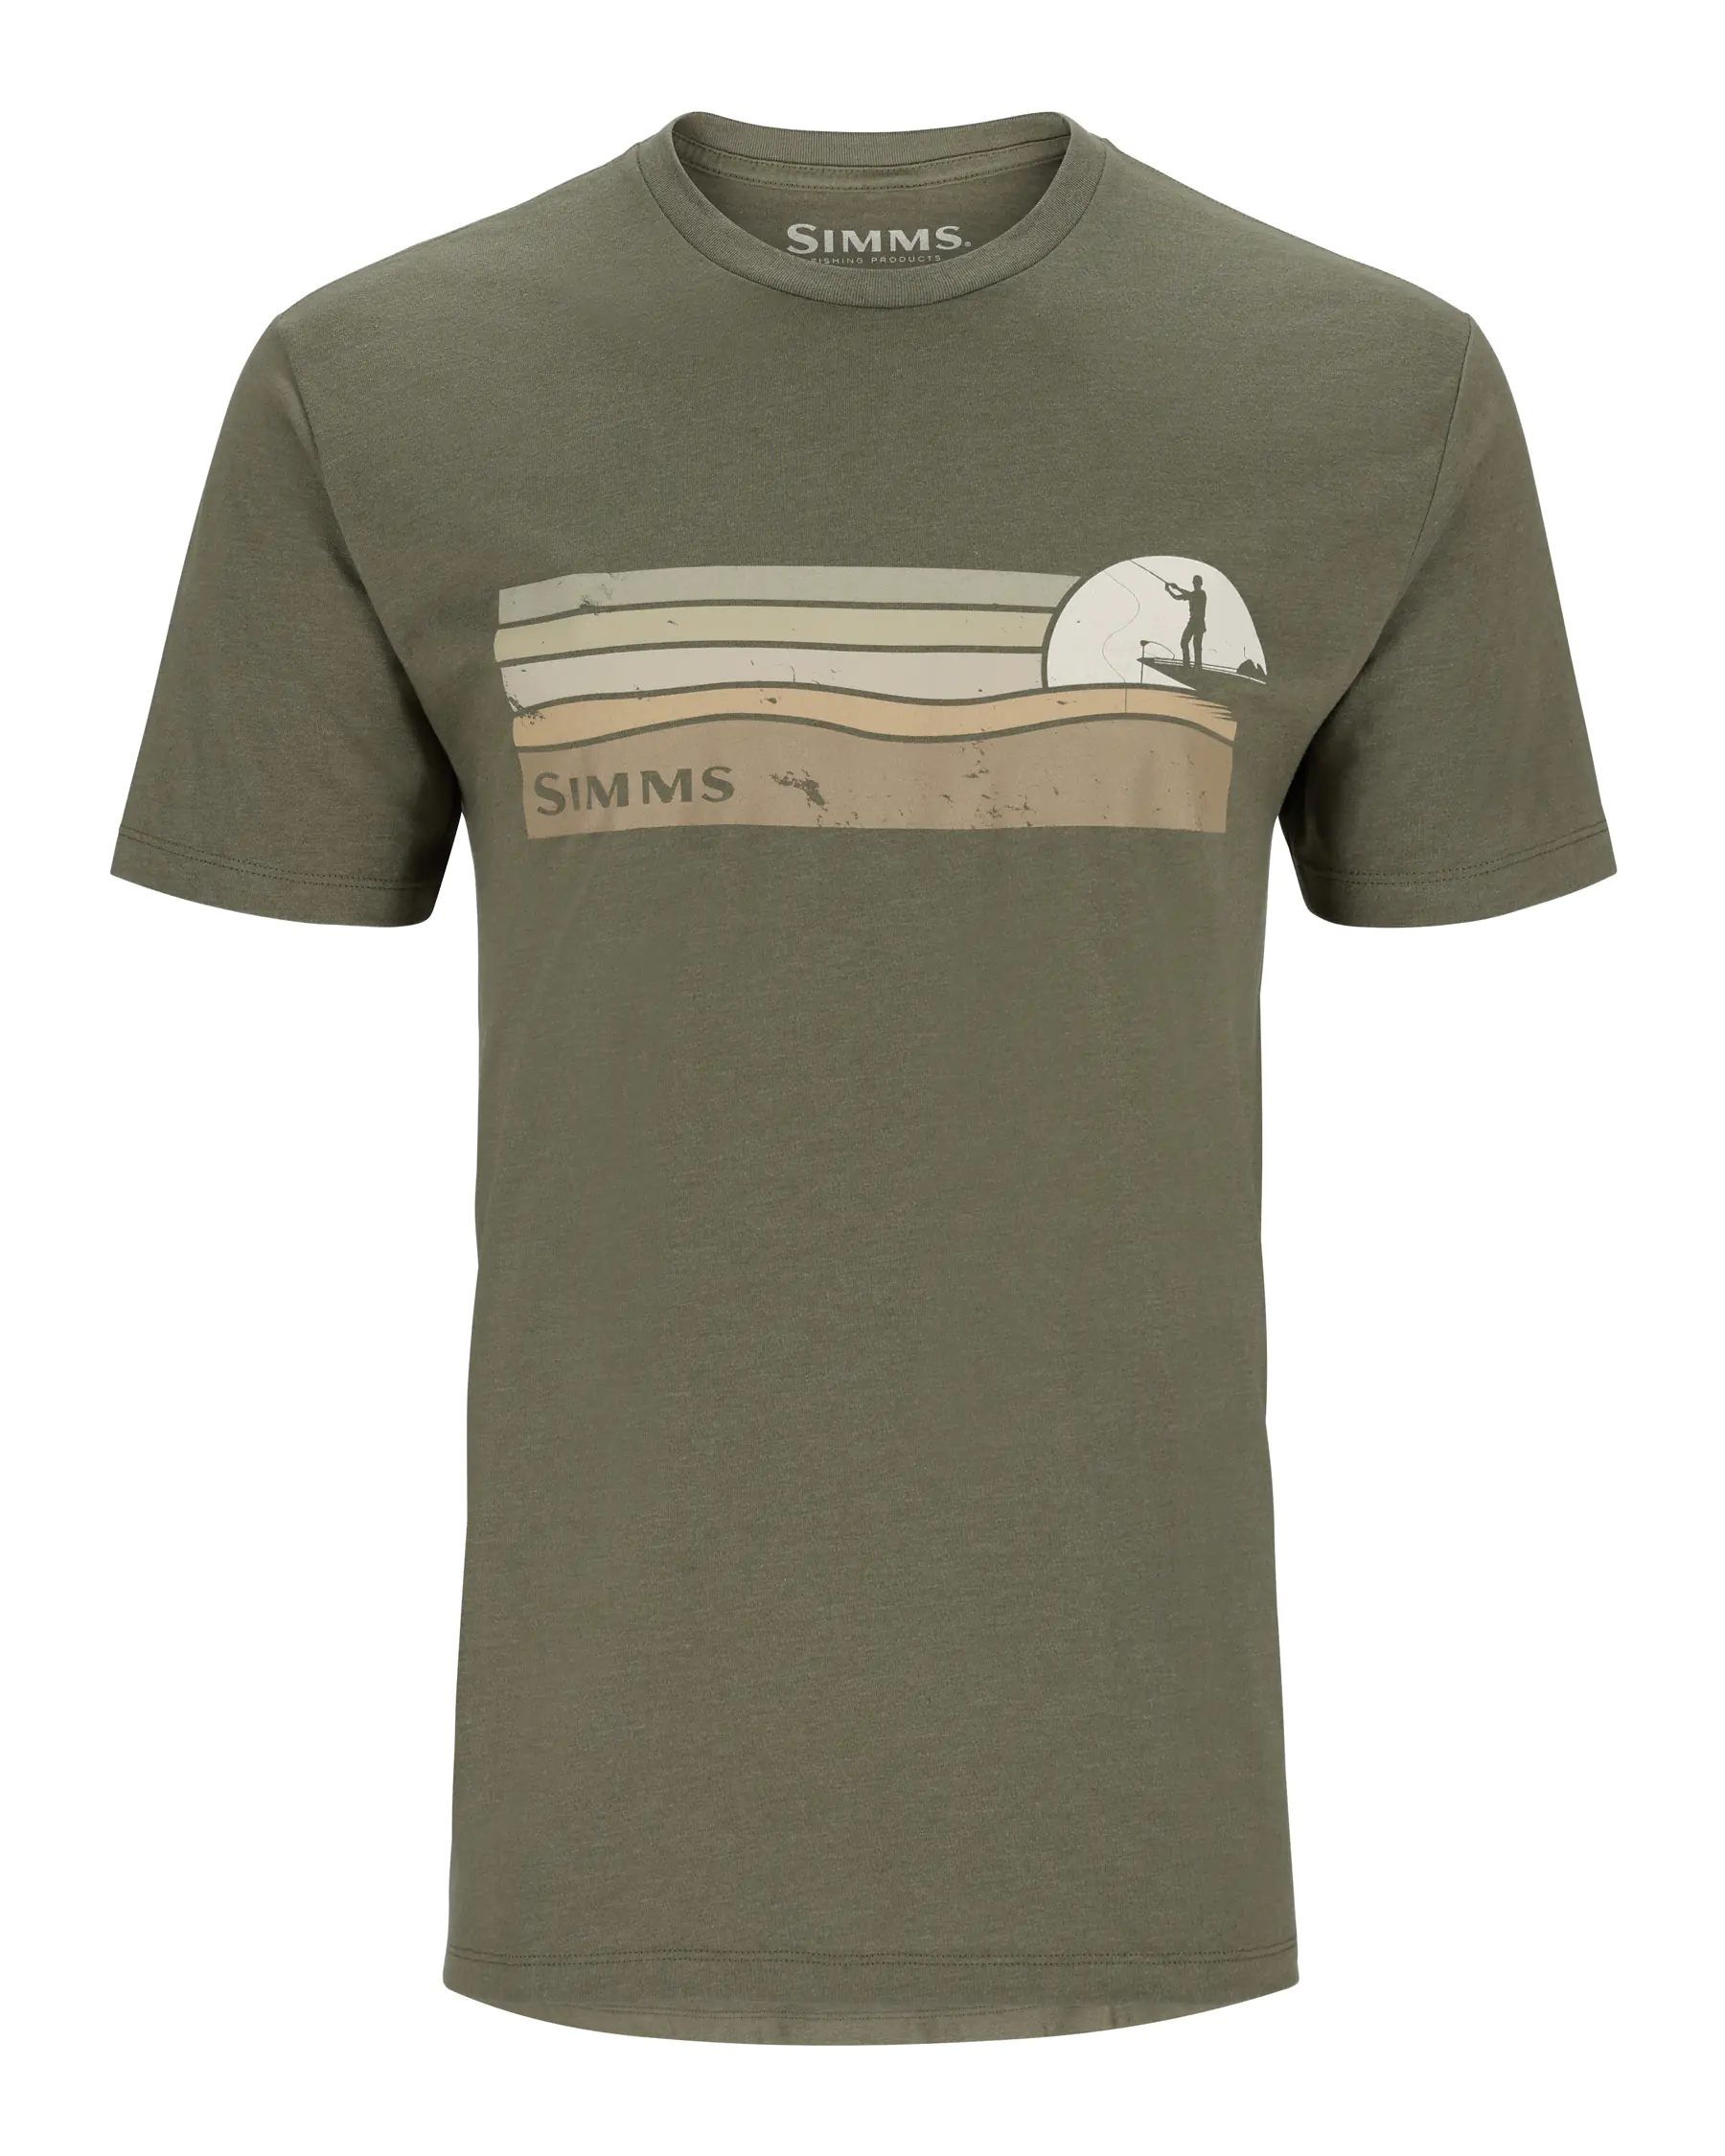 Simms Sunset T-Shirt - Men's